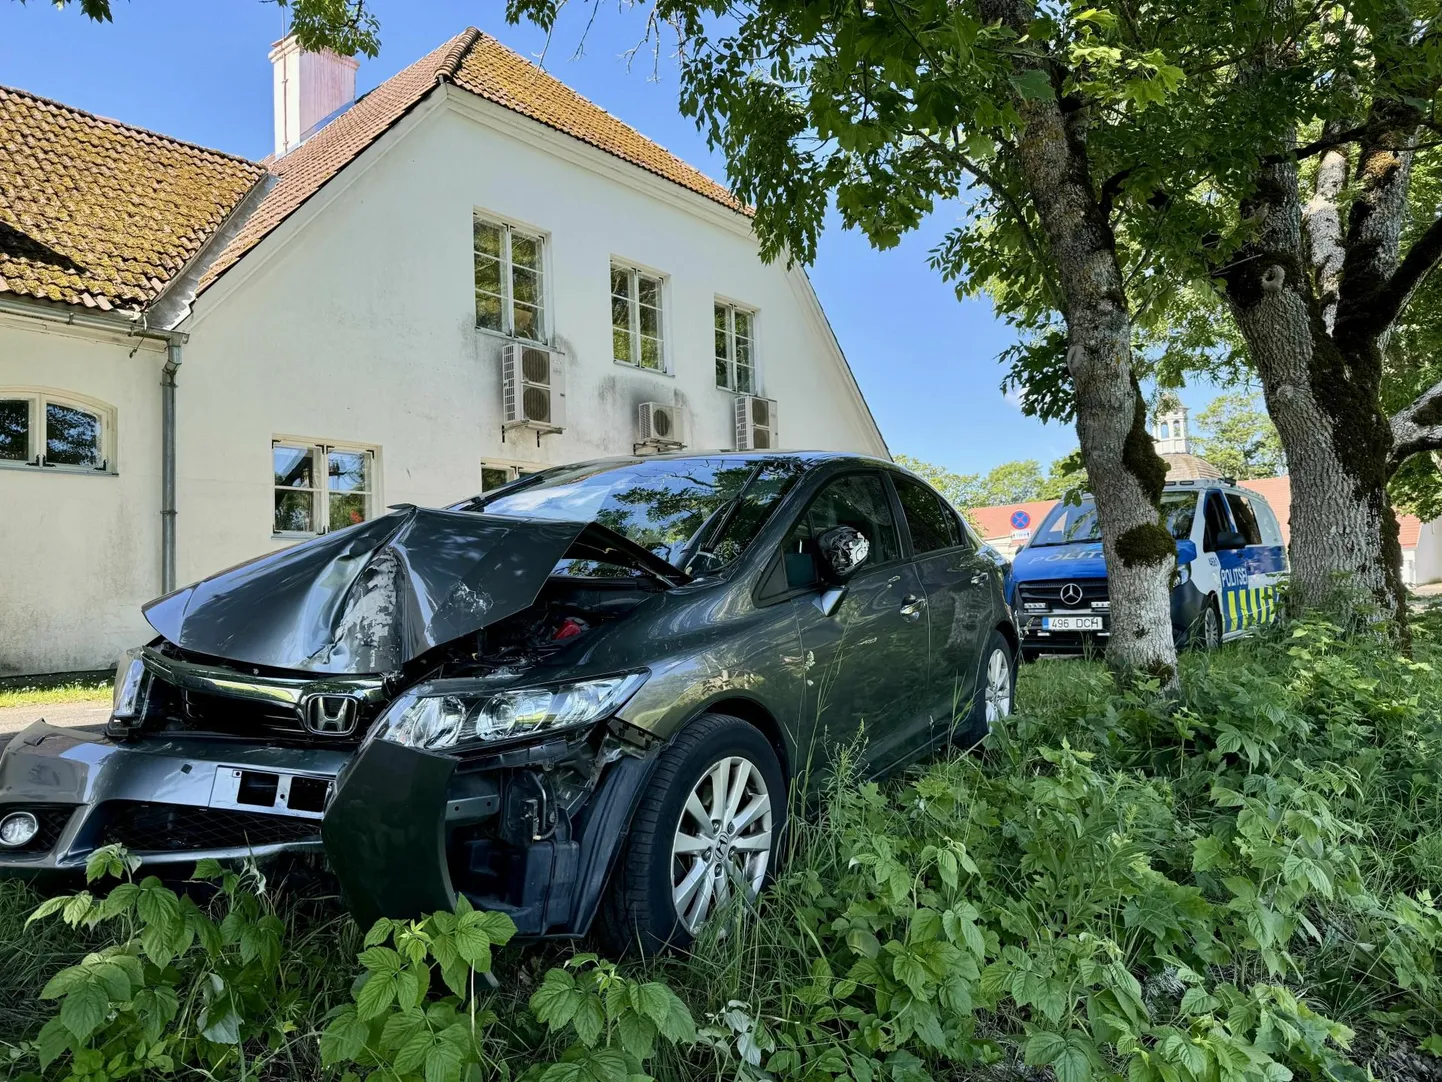 Автомобиль Honda, врезавшийся в дерево, получил серьезные повреждения.